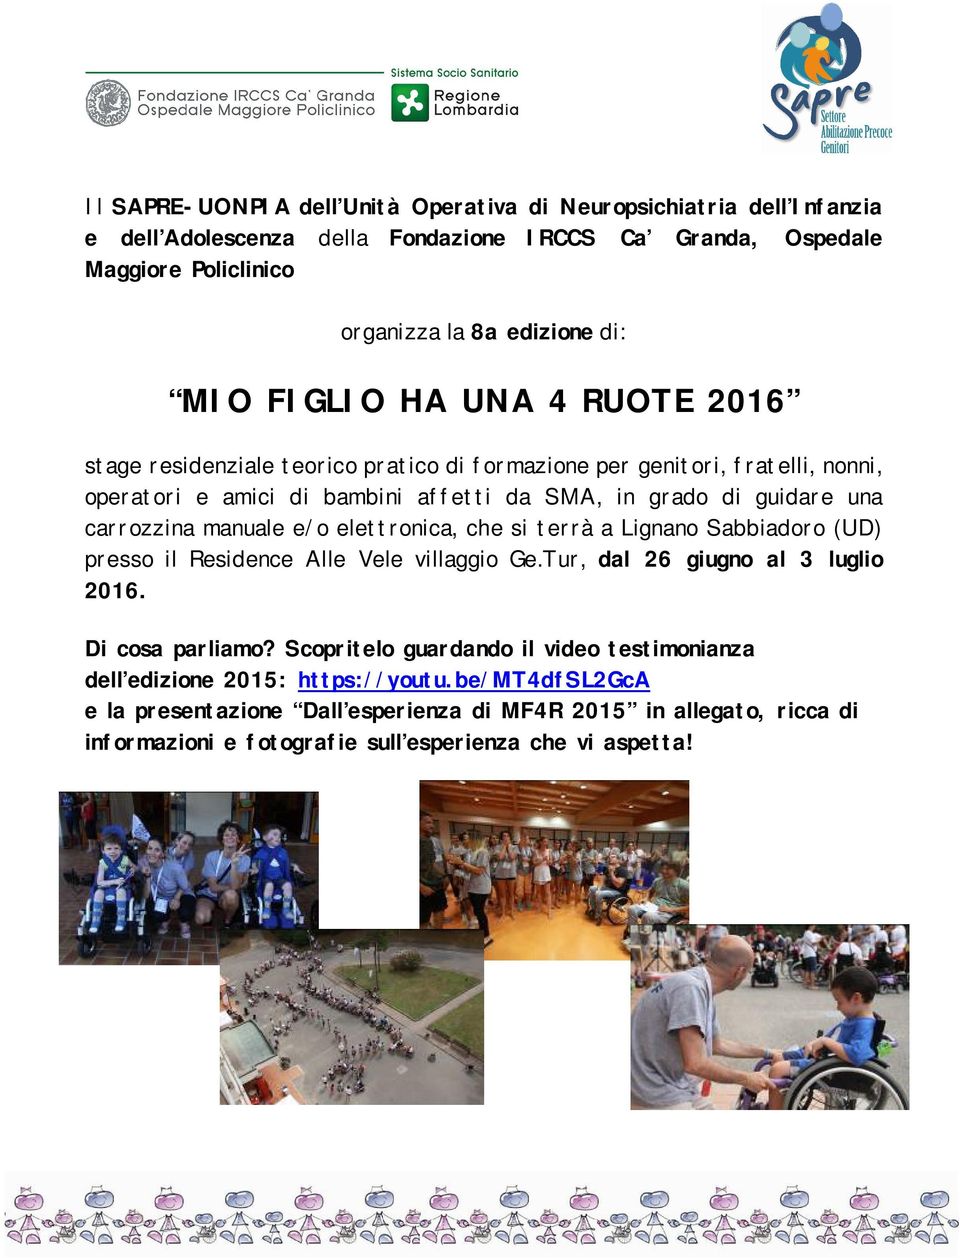 manuale e/o elettronica, che si terrà a Lignano Sabbiadoro (UD) presso il Residence Alle Vele villaggio Ge.Tur, dal 26 giugno al 3 luglio 2016. Di cosa parliamo?